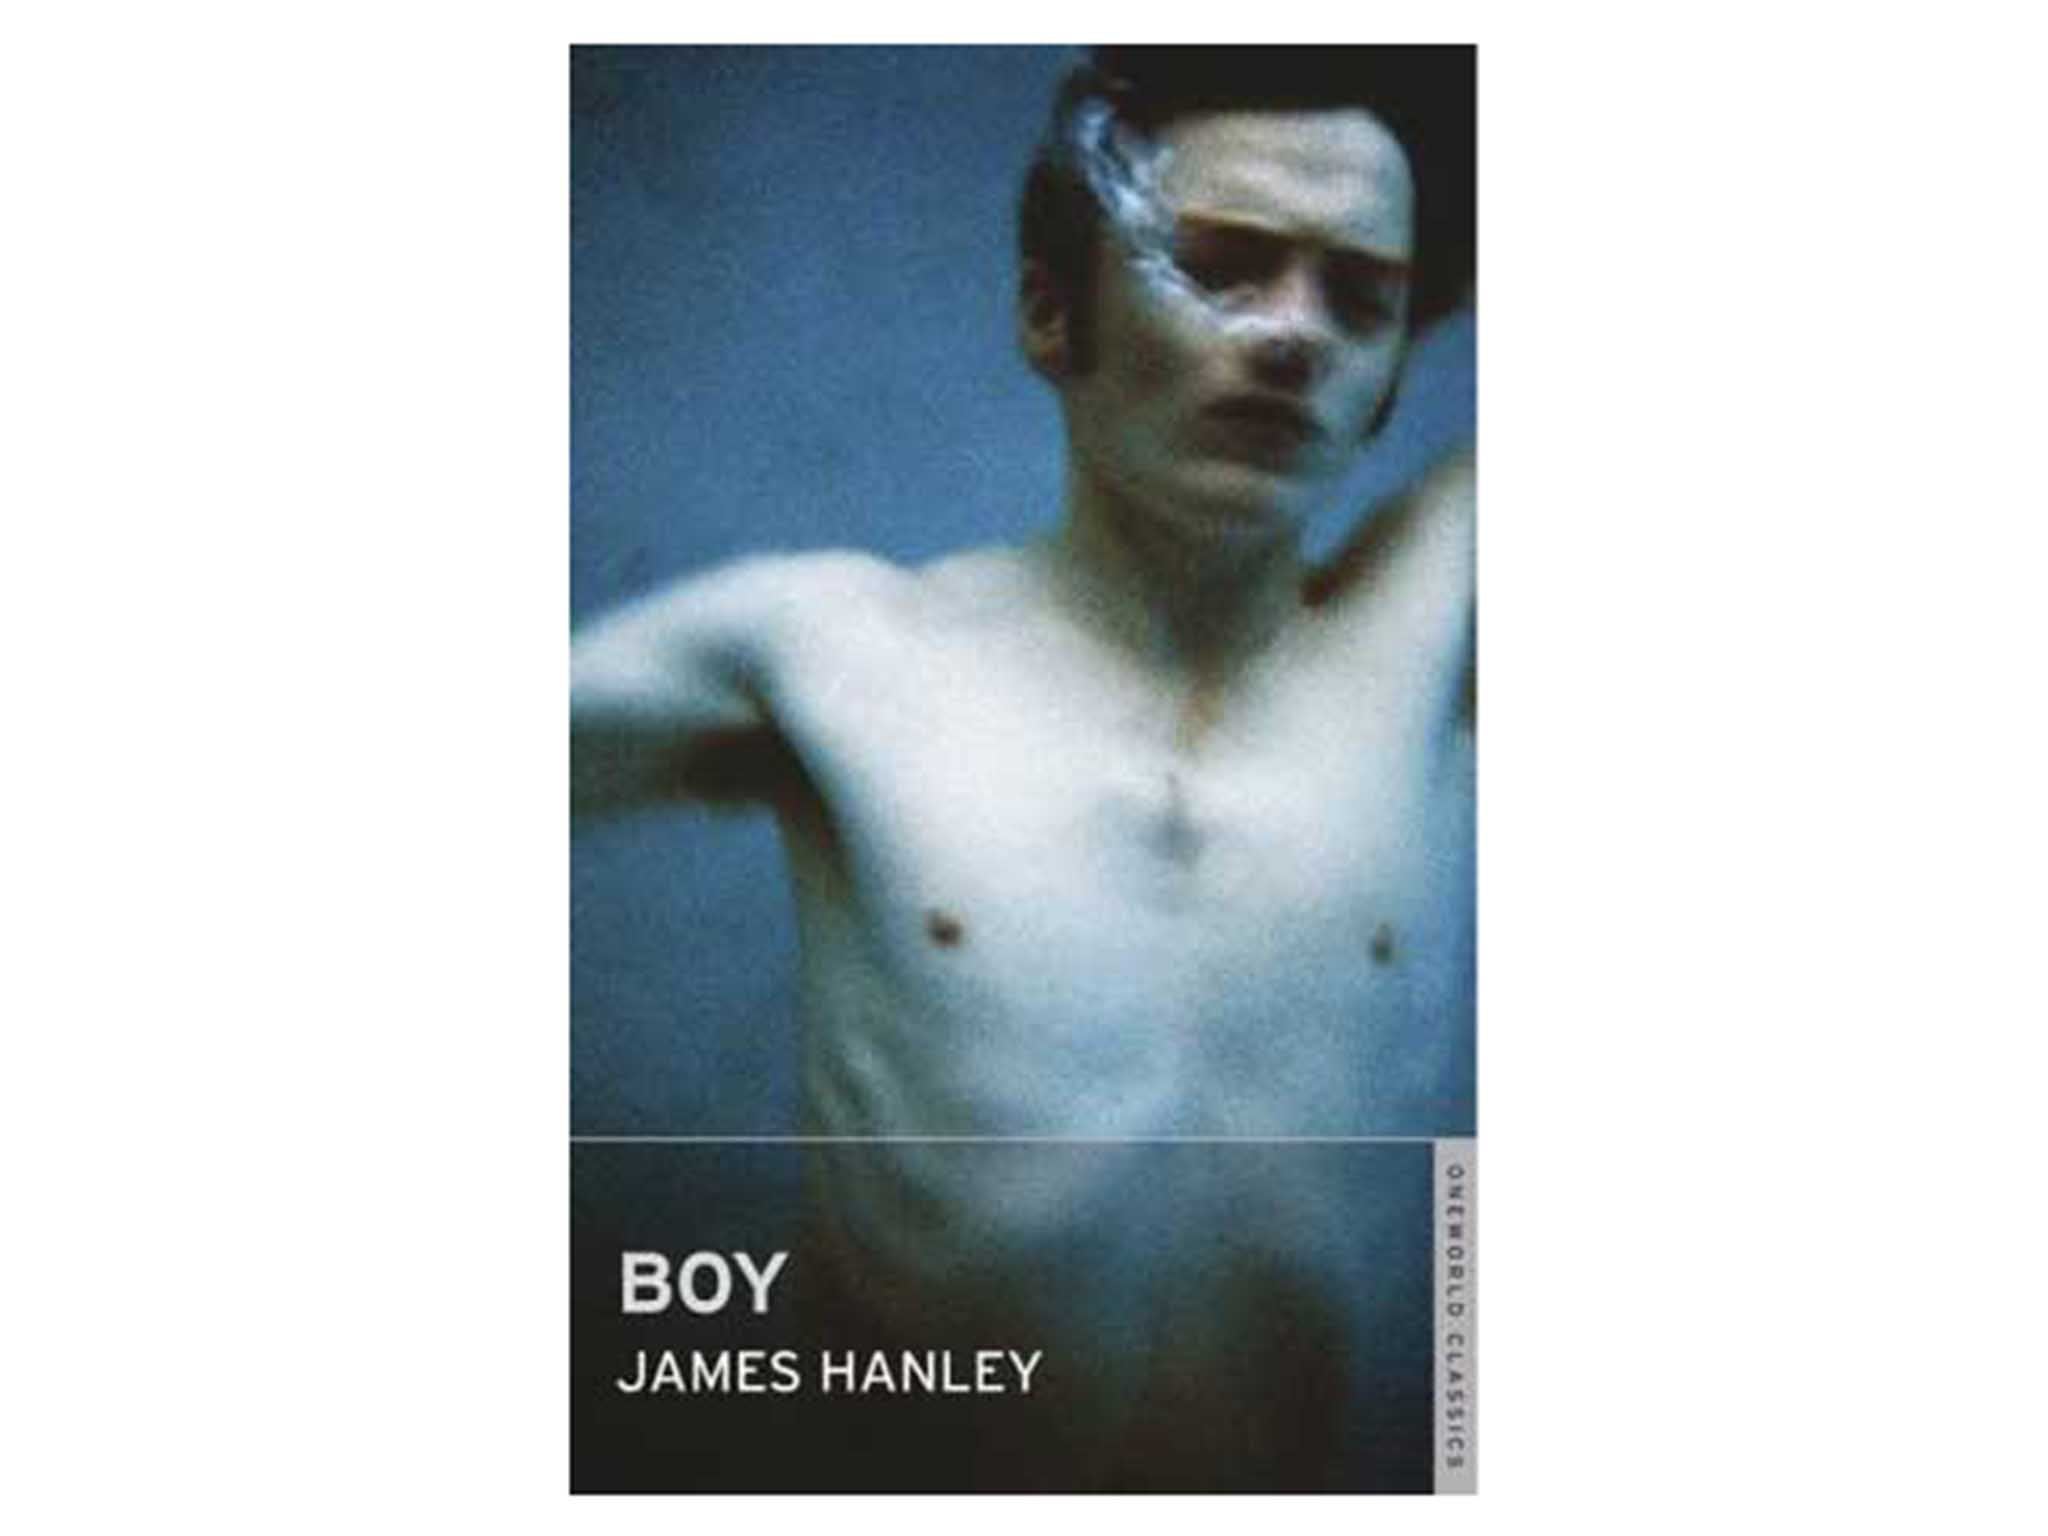 JamesHanleyBoy-756956 indybest banned book week.jpg